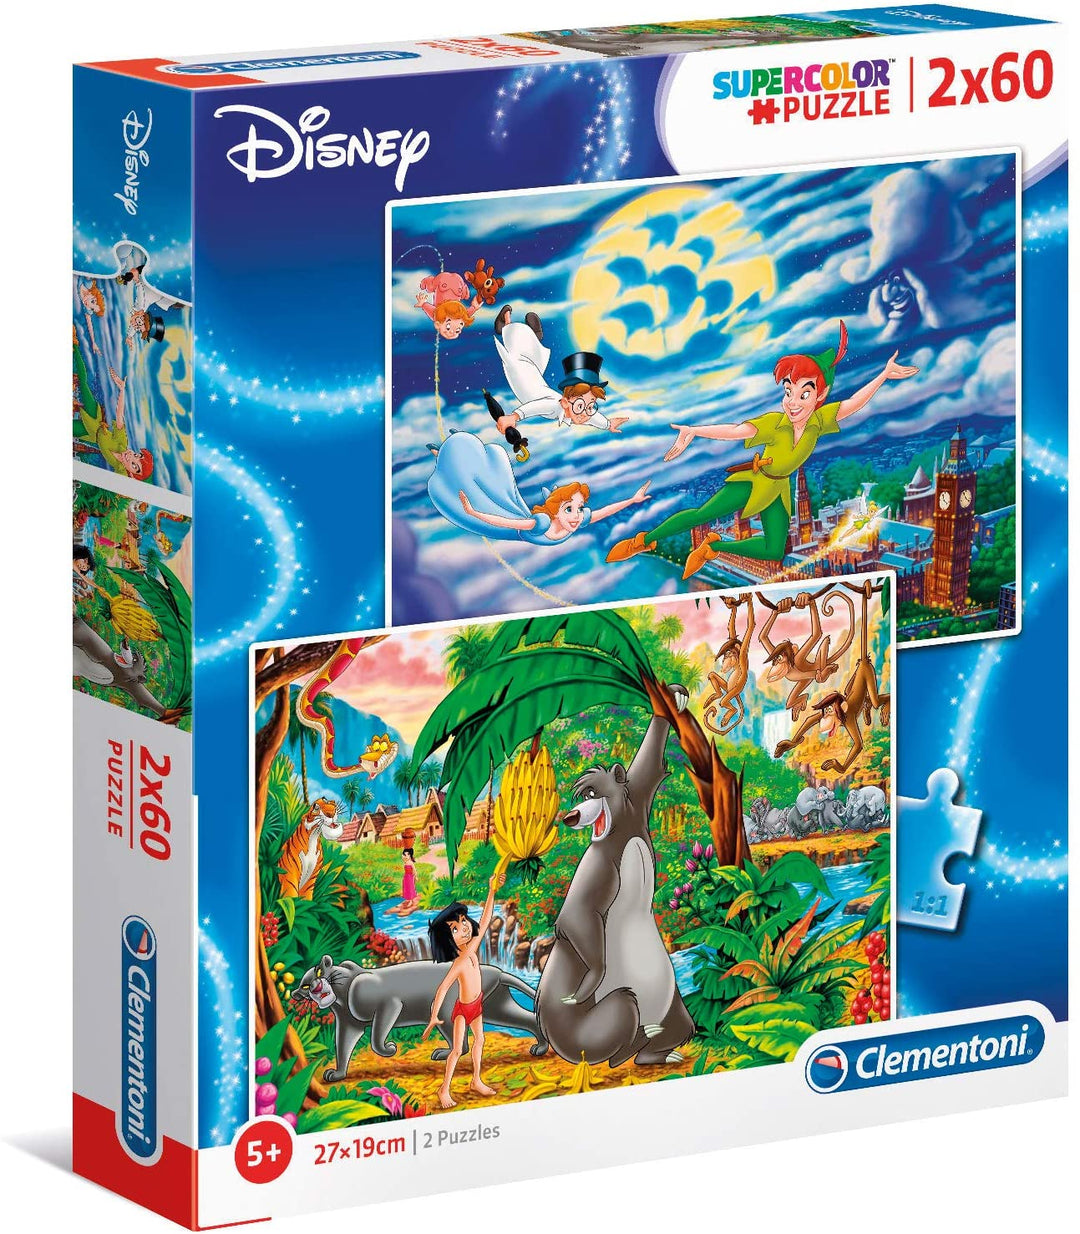 Clementoni – 21613 – Supercolor-Puzzle – Disney Peter Pan + Dschungelbuch – 2 x 60 Teile – hergestellt in Italien – Puzzle für Kinder ab 5 Jahren